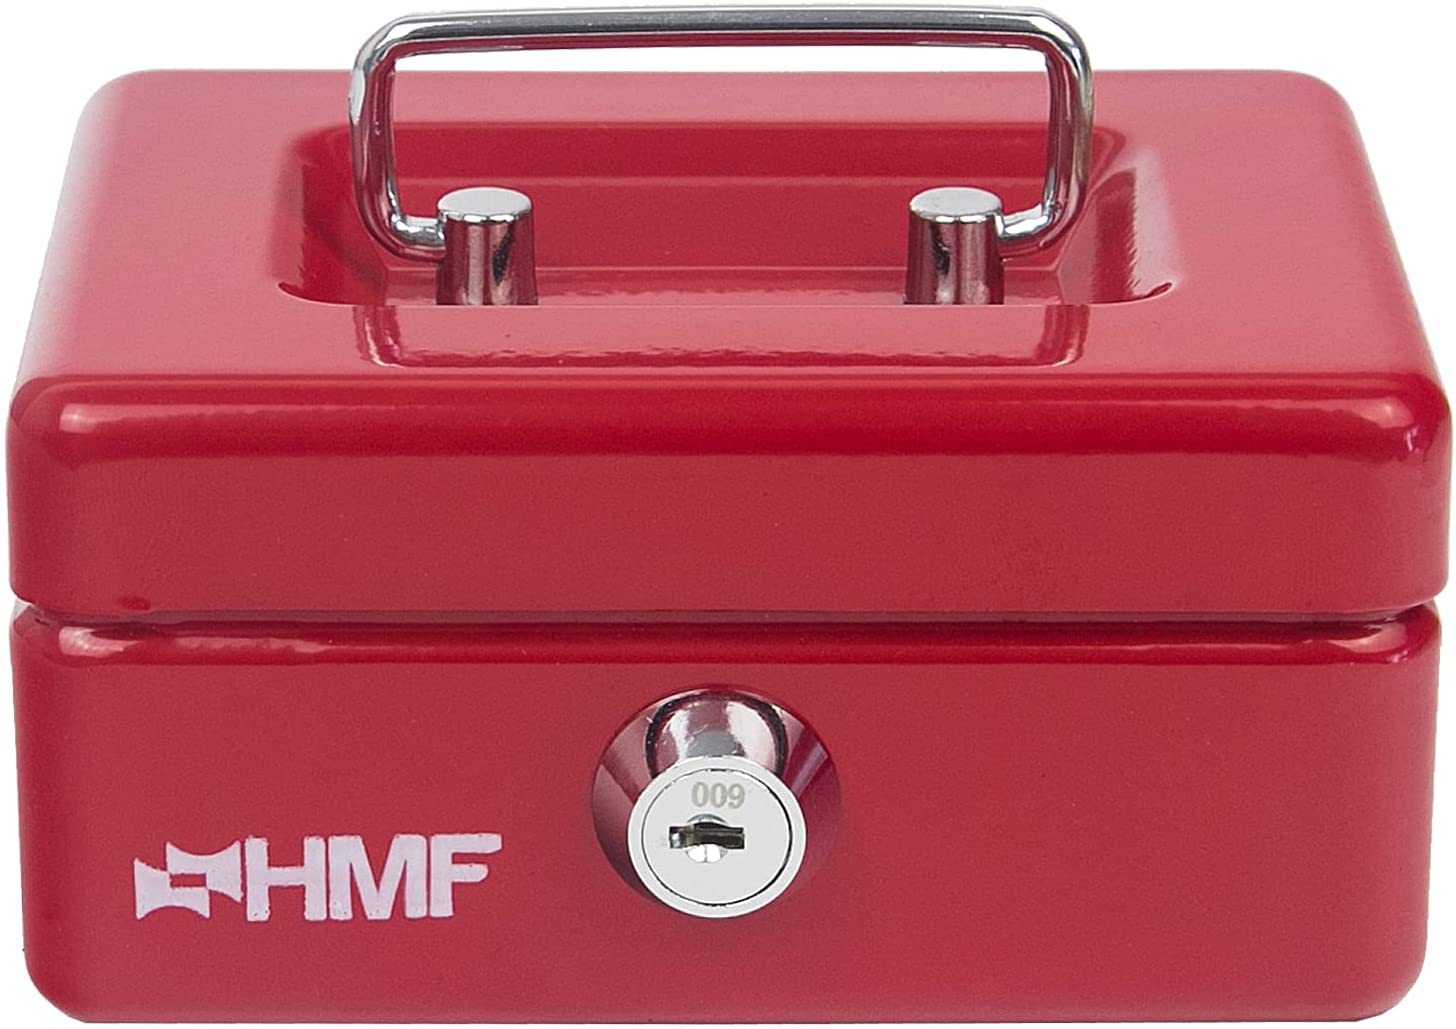 HMF Kinder Spardose Geldkassette abschließbar mit Schlitz rot